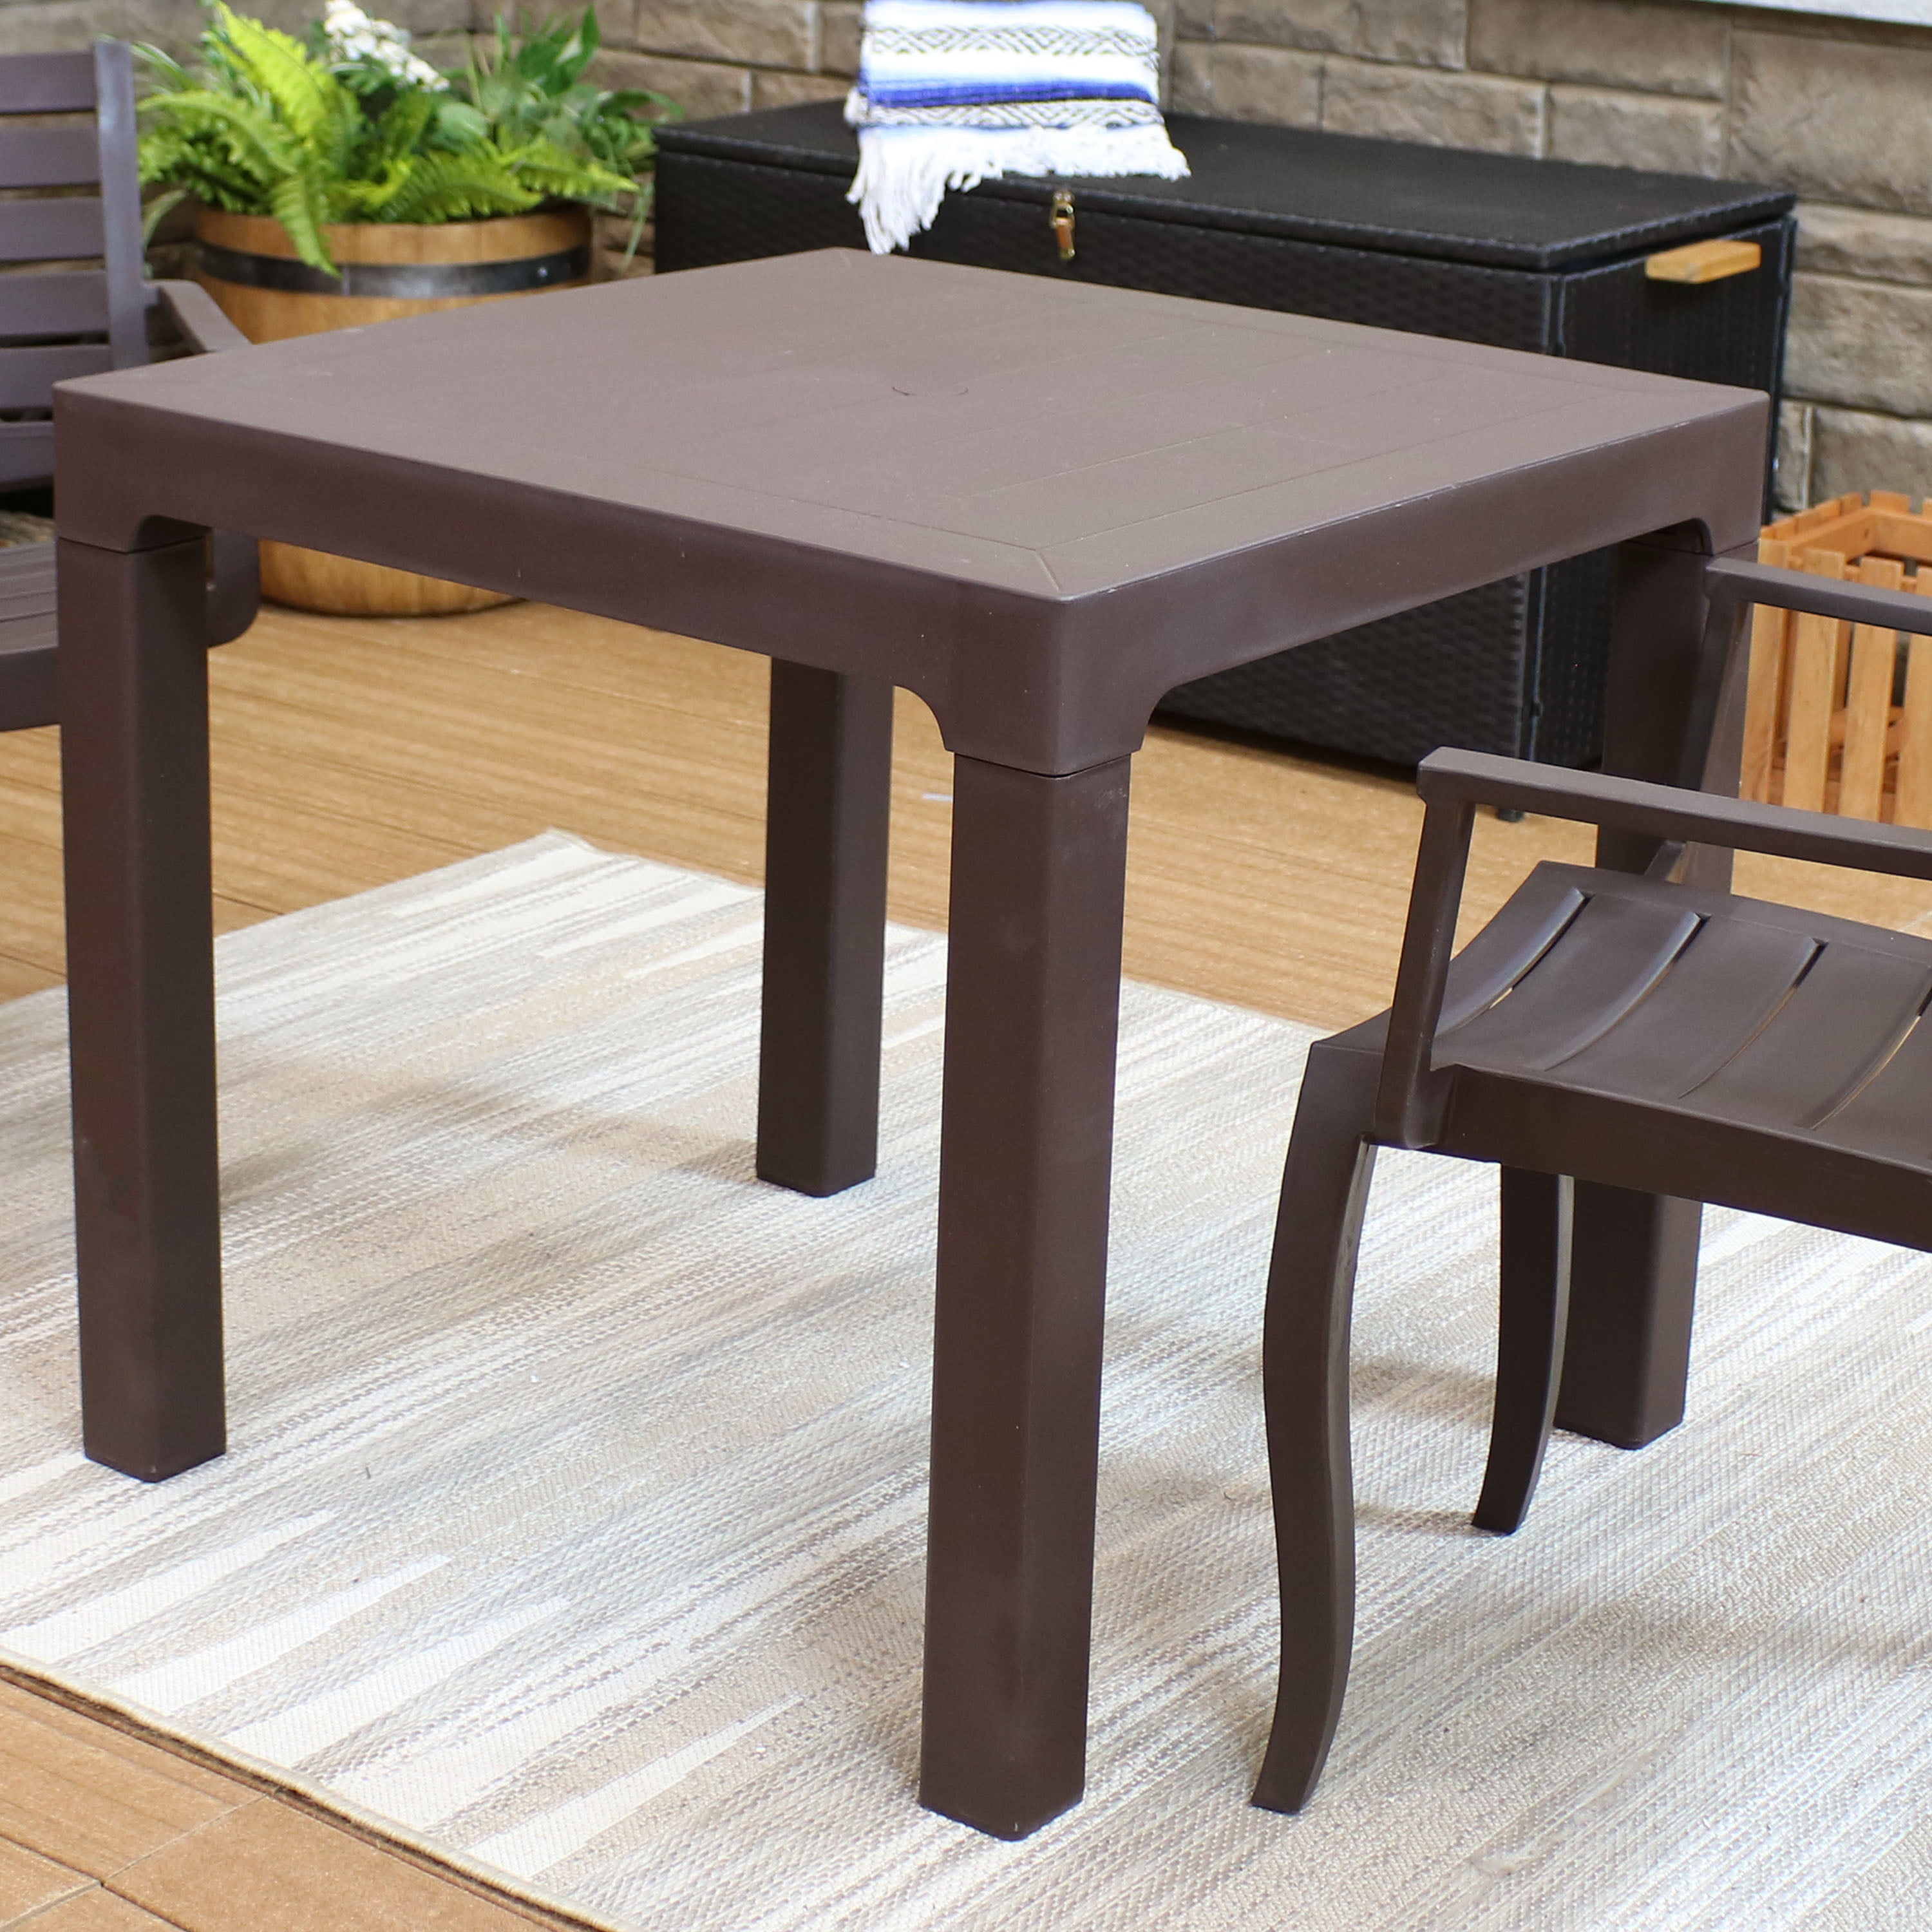 Sunnydaze Square Patio Dining Table - Plastic Indoor/Outdoor Furniture